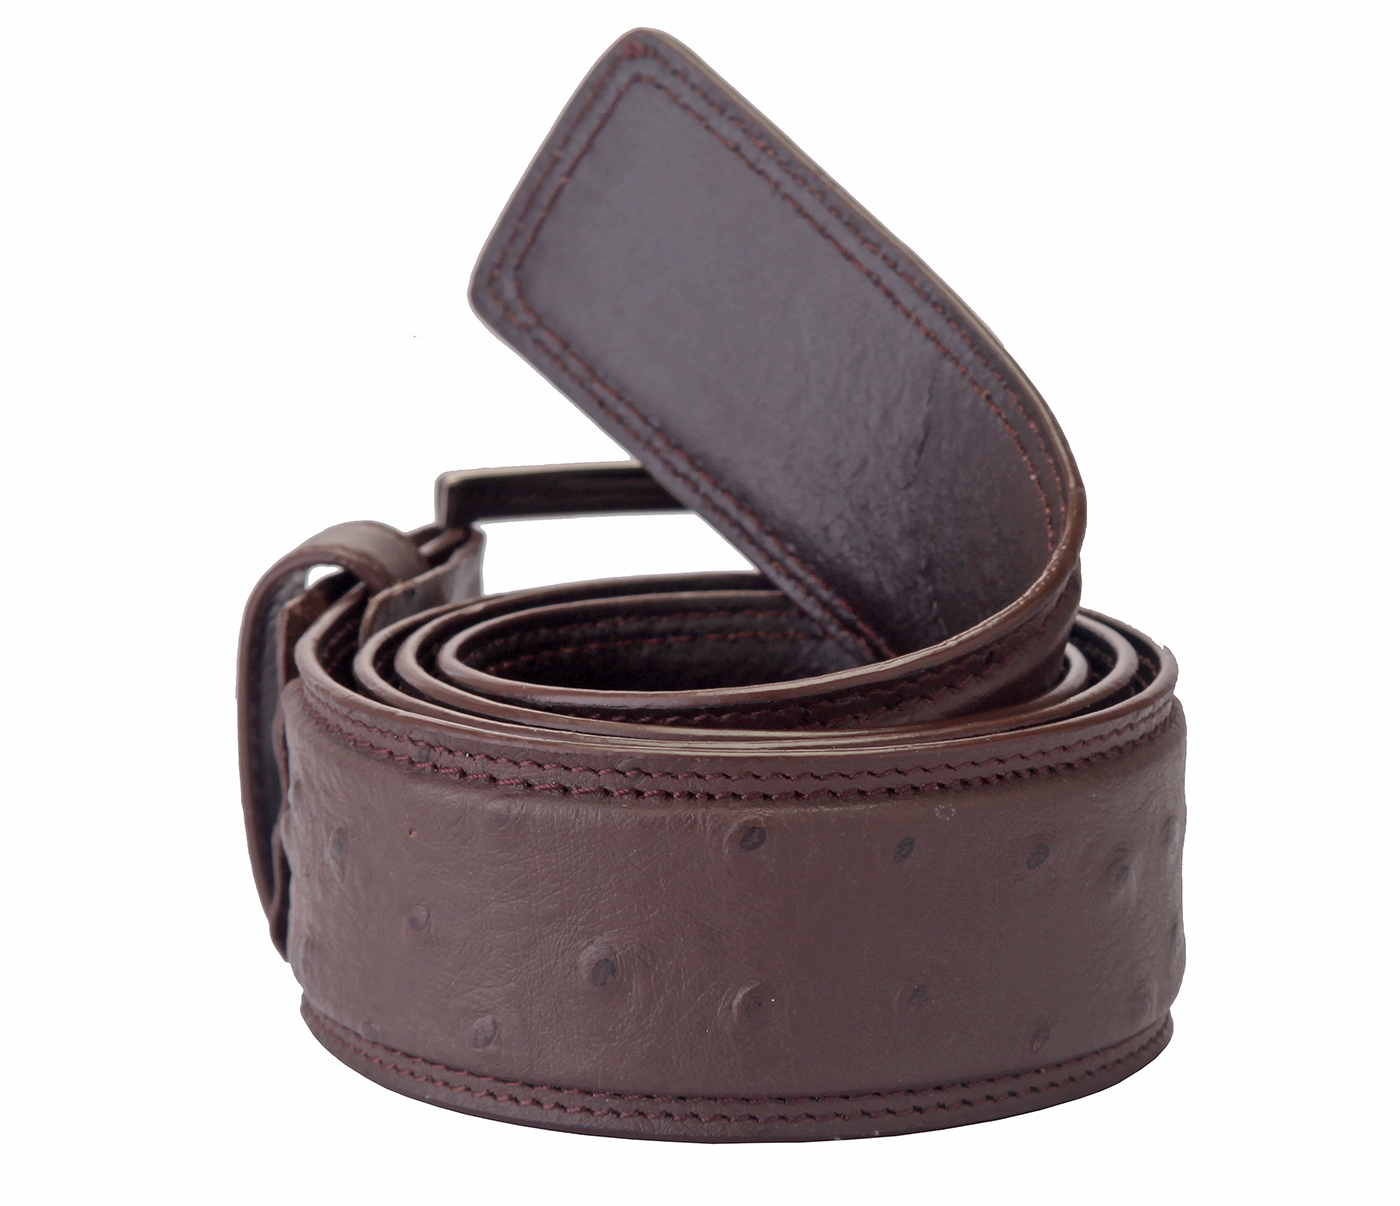 Belt--Men's stylish Formal wear belt in Genuine Leather - Brown.